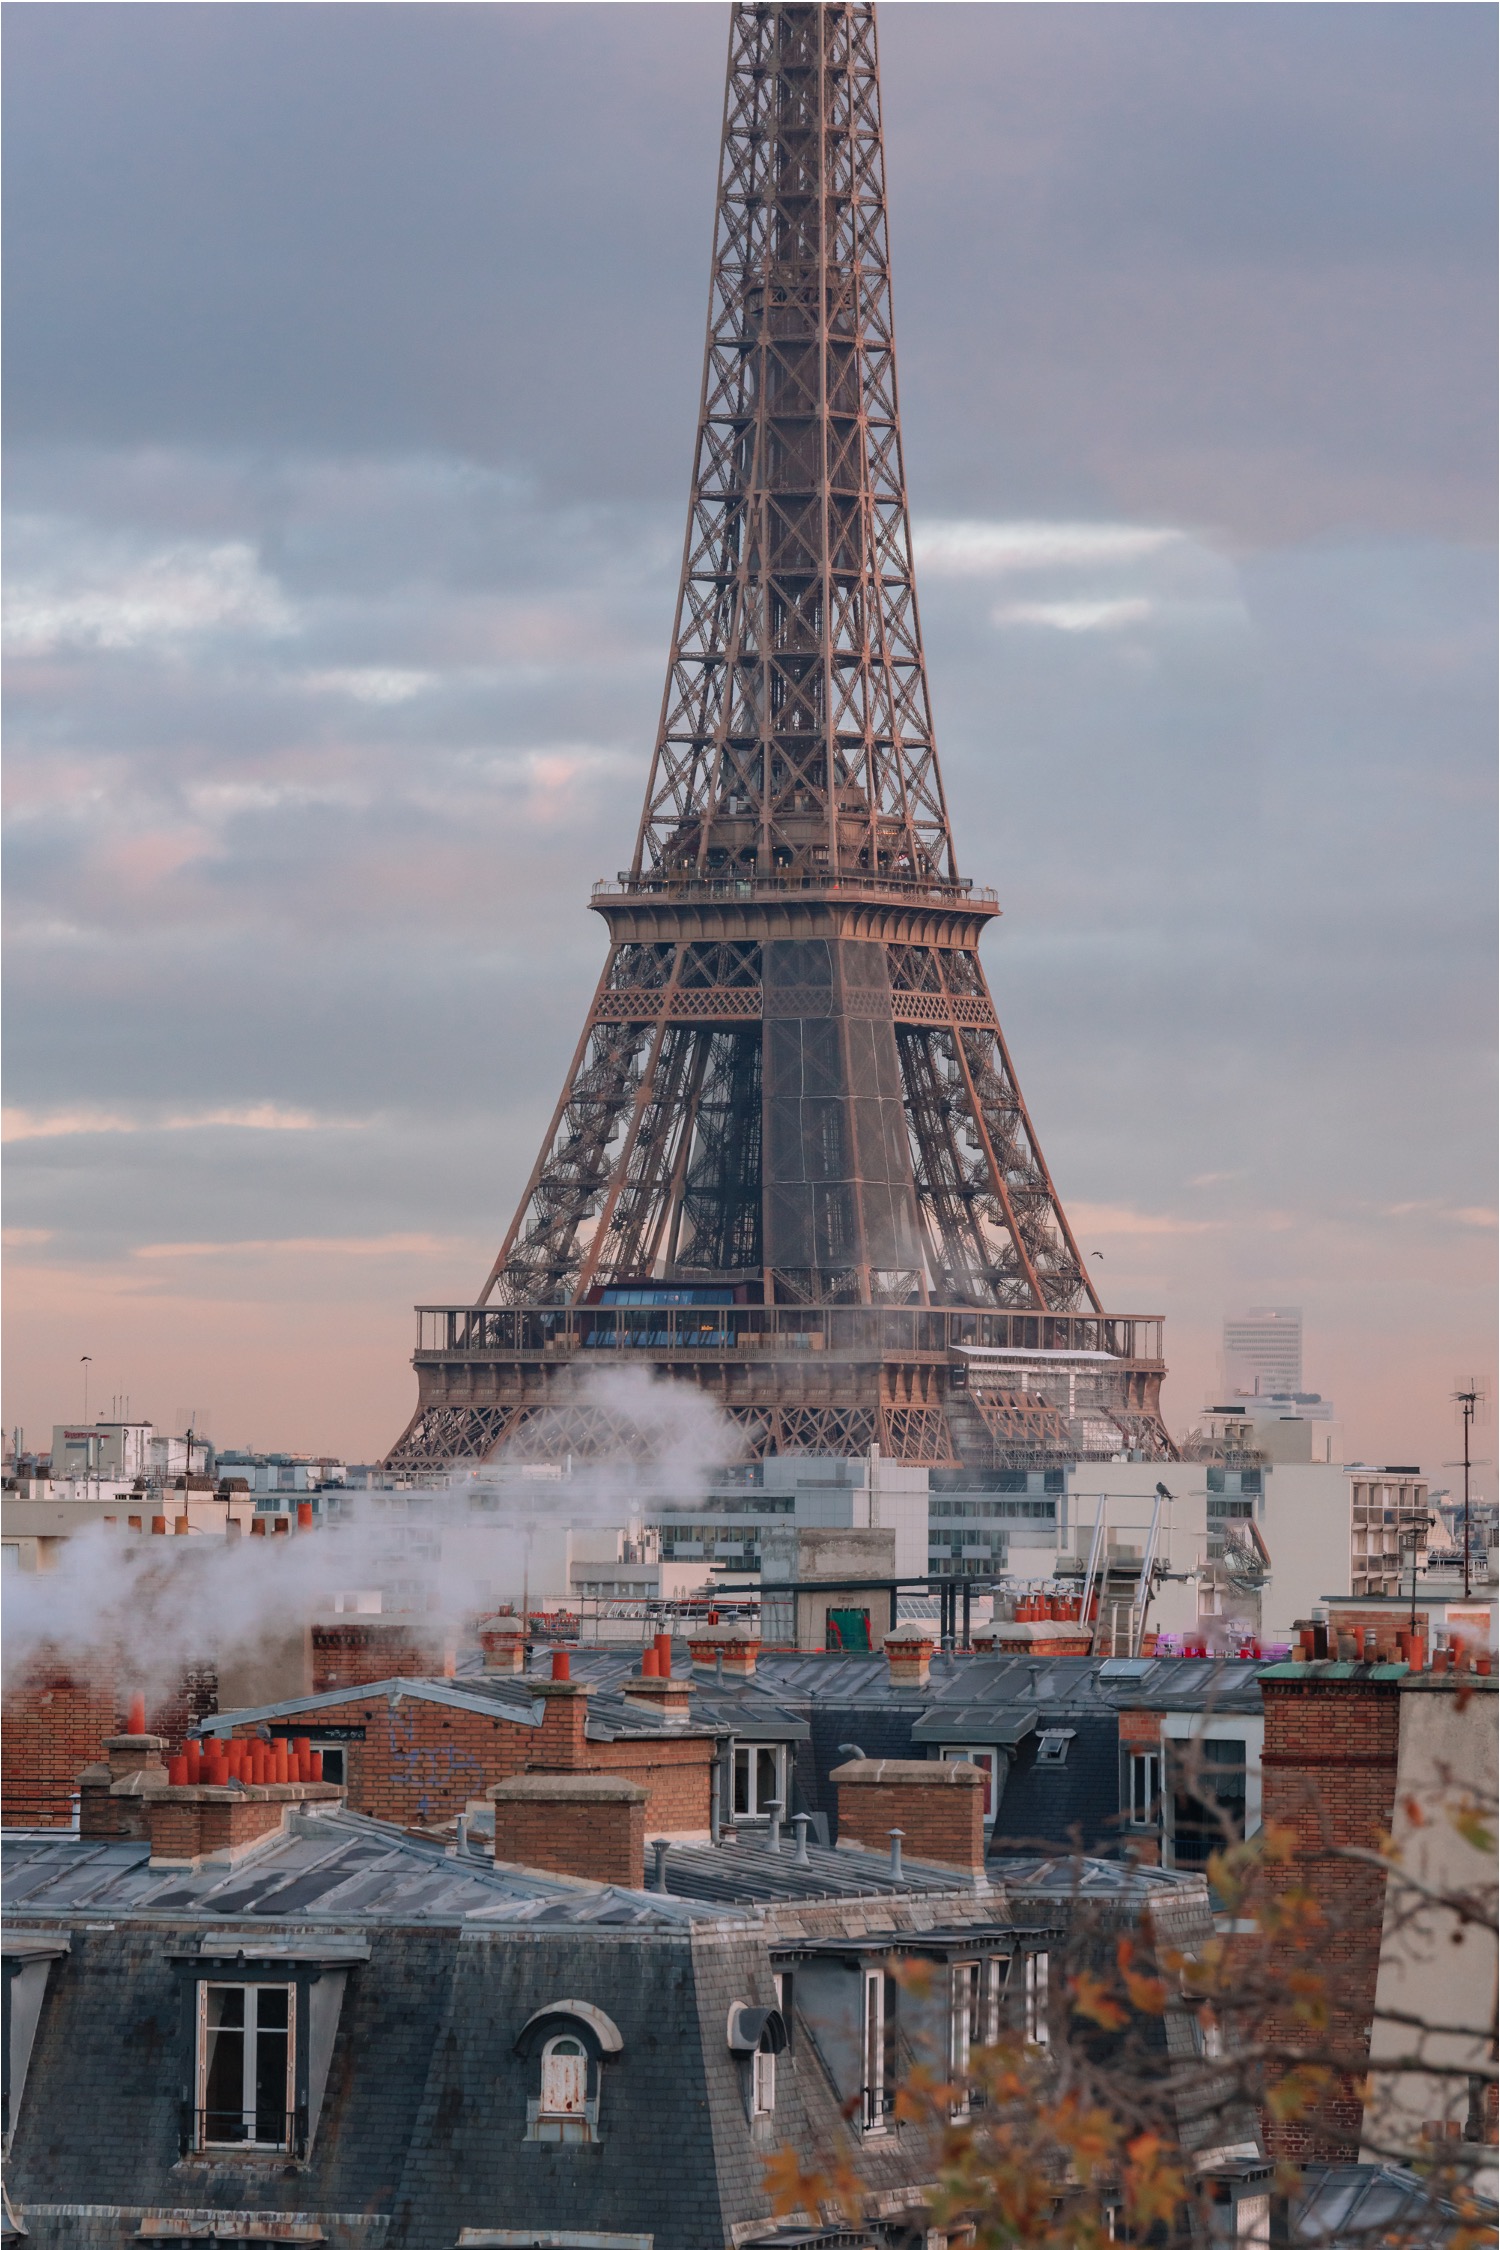 에펠탑 전망과 굴뚝에서 피어오르는 연기